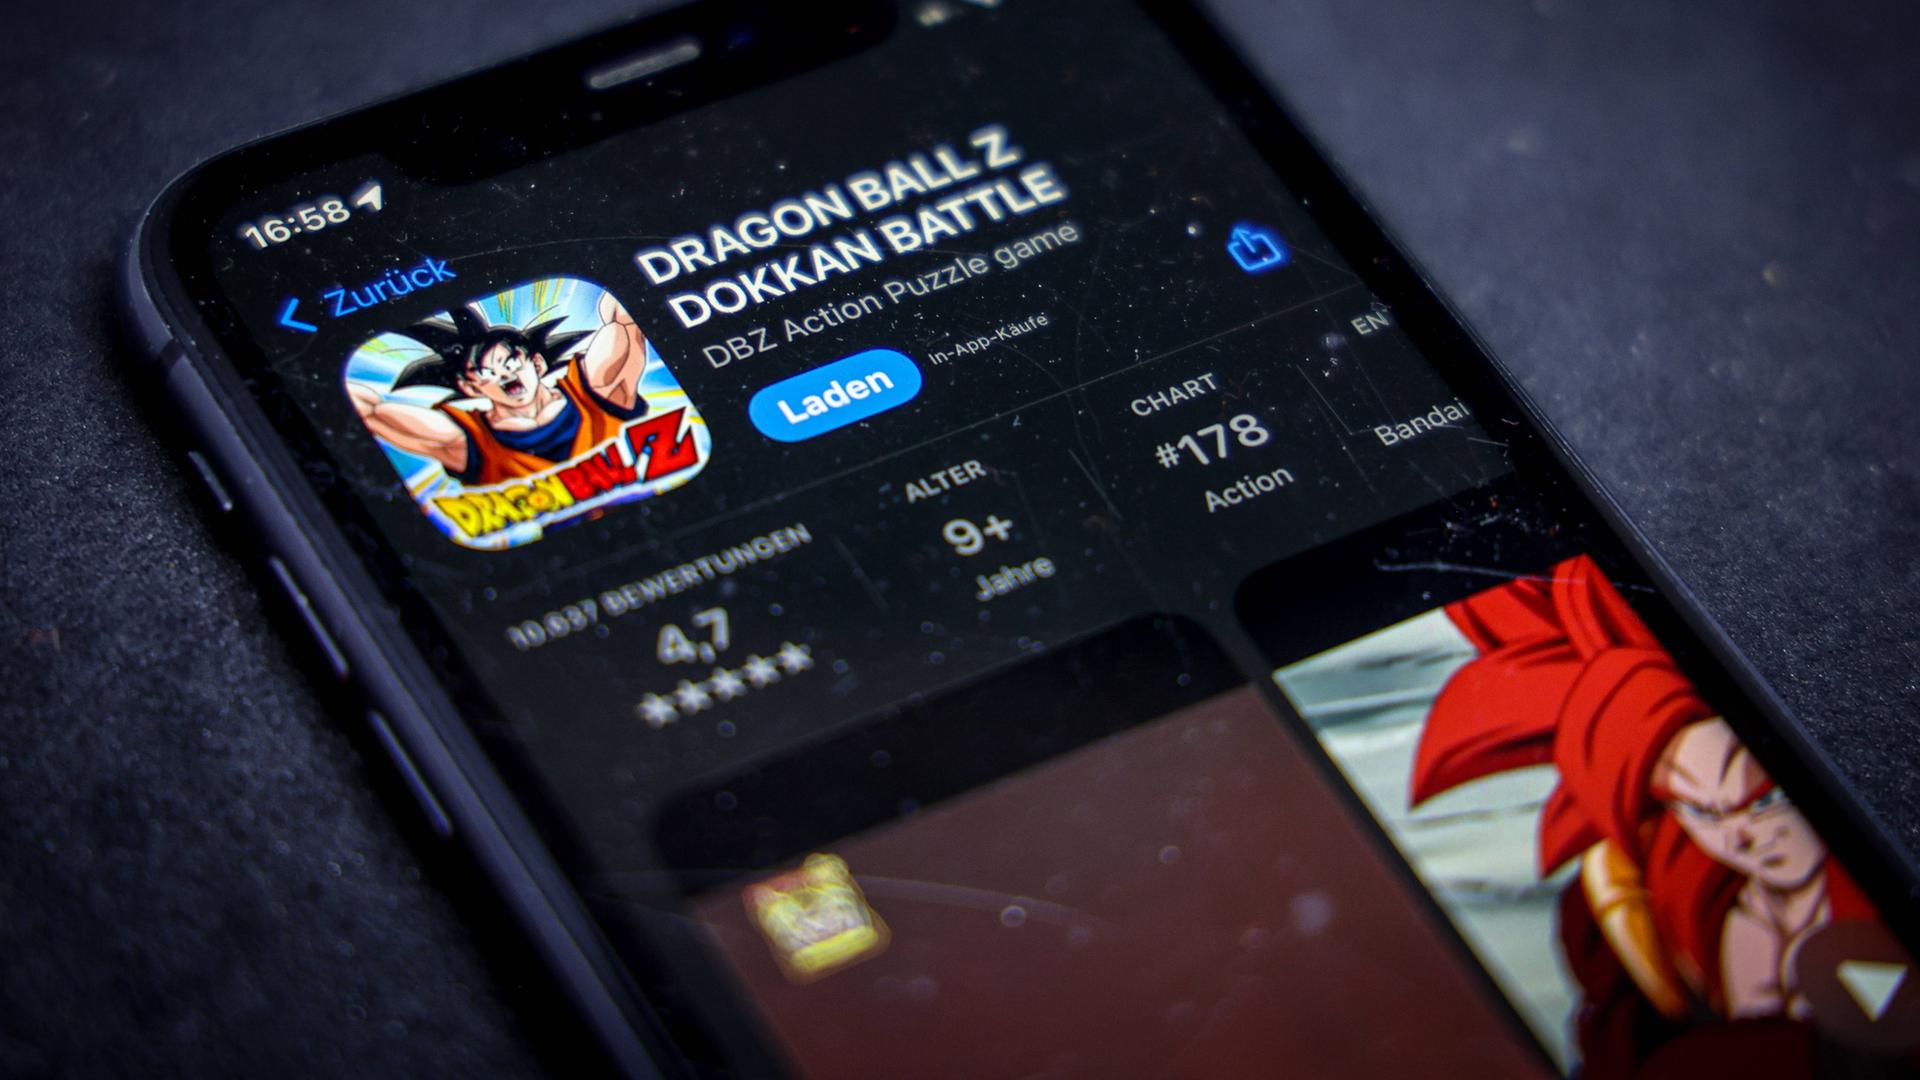 Das Manga-Spiel "Dragon Ball" wird auf einem iPhone geladen.